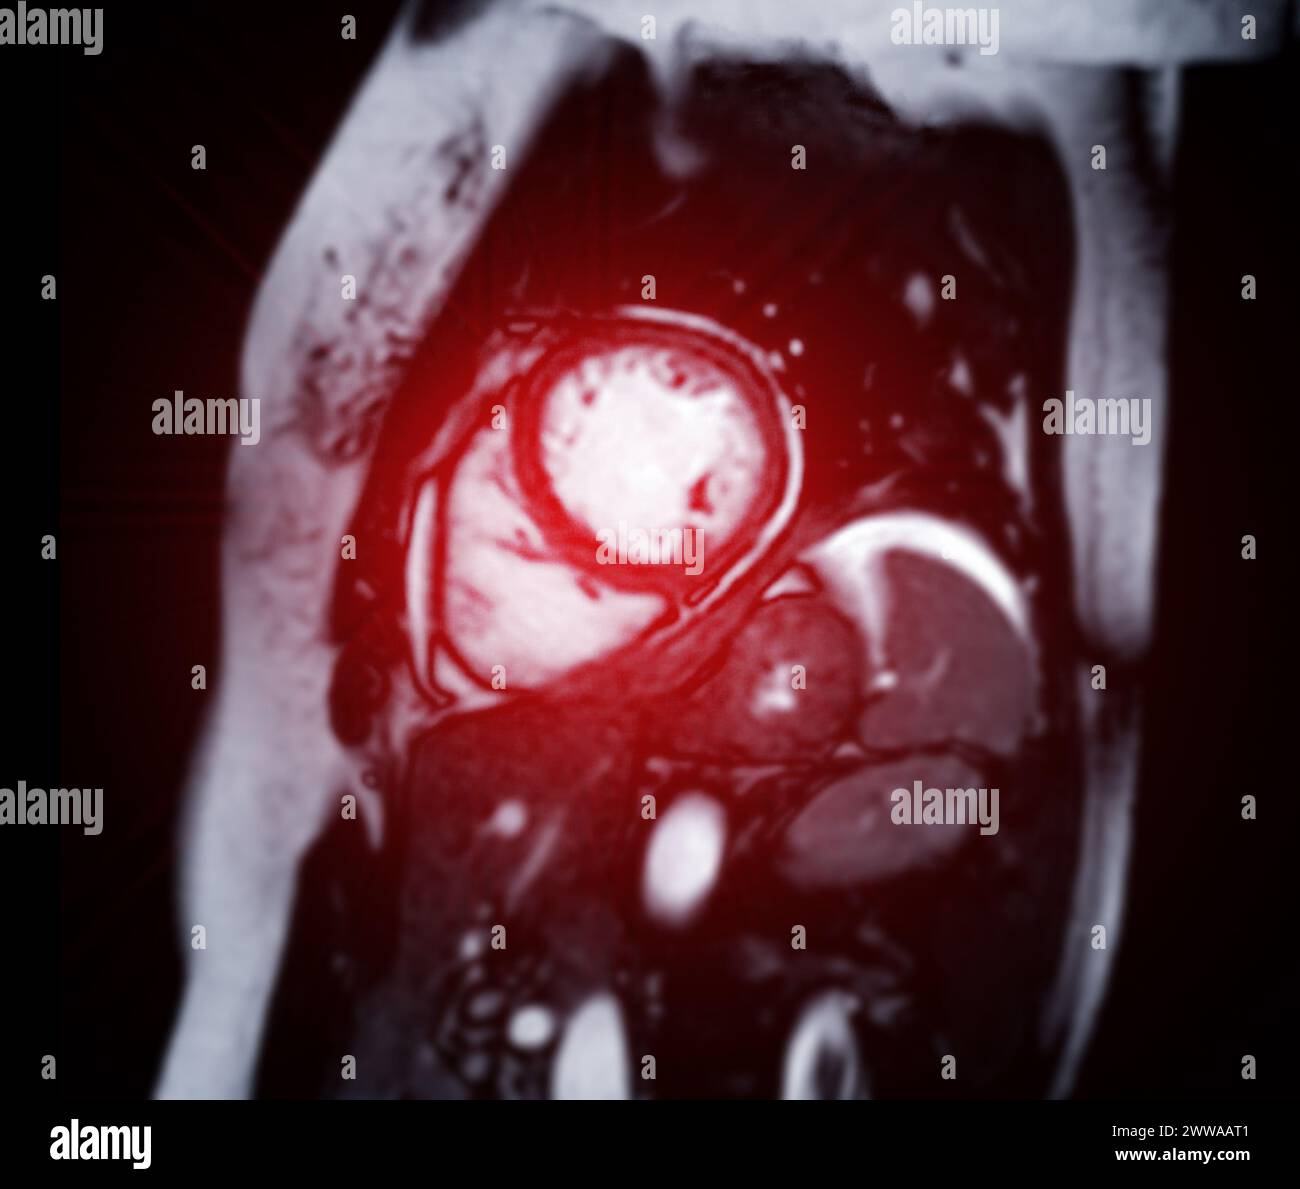 Le immagini RM cardiache sono fondamentali per valutare la salute cardiaca, identificare anomalie cardiache e guidare i piani di trattamento. Foto Stock